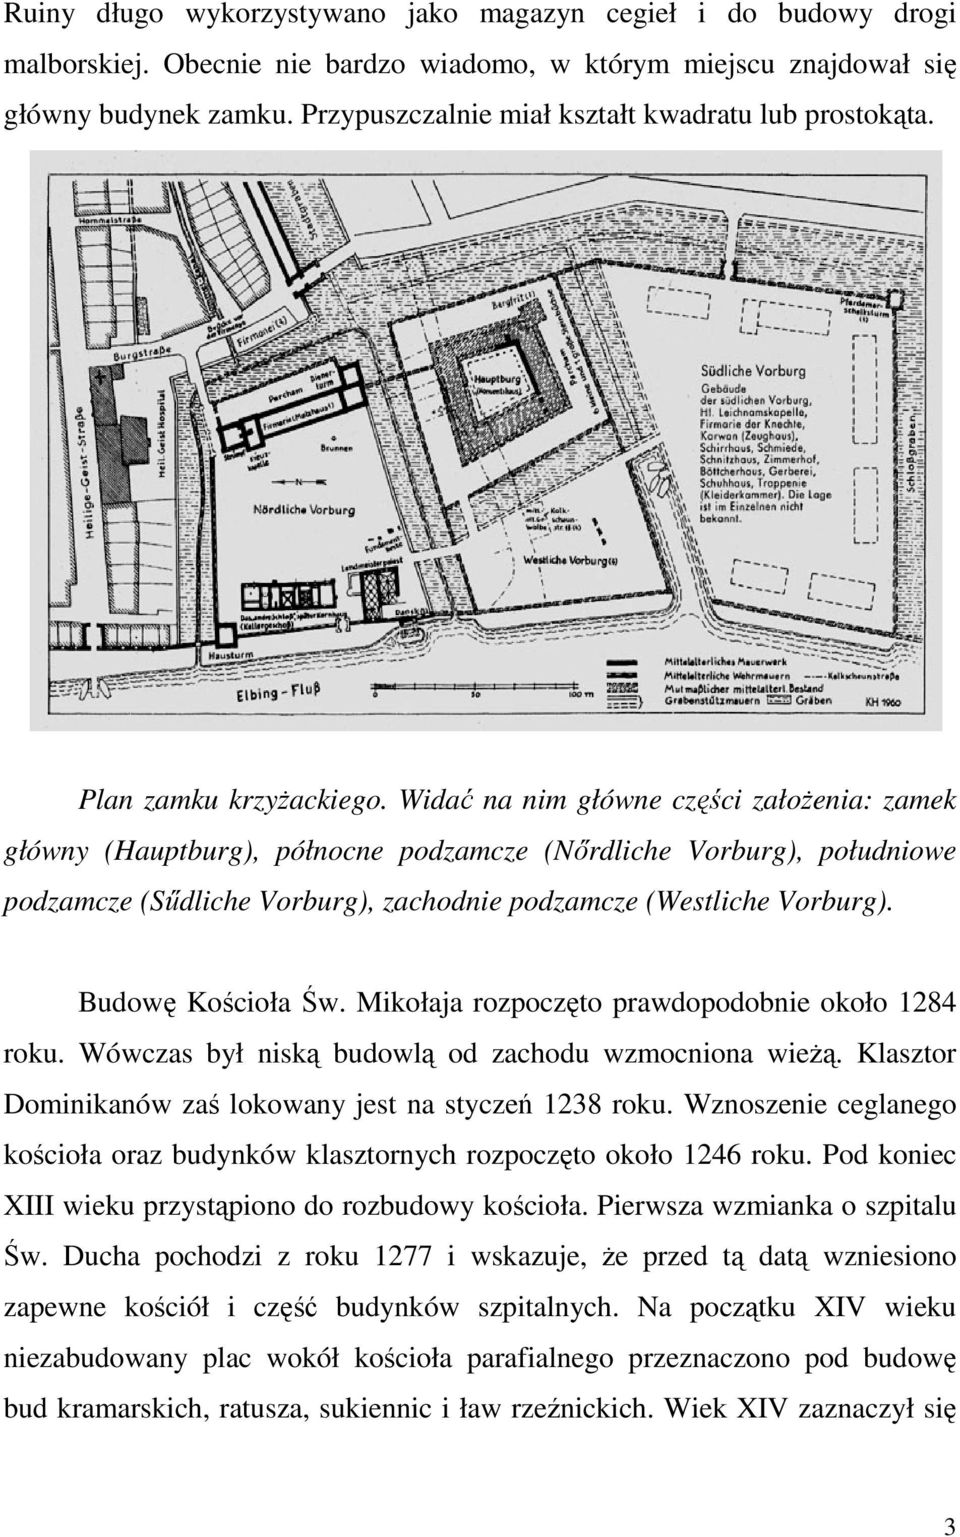 Widać na nim główne części założenia: zamek główny (Hauptburg), północne podzamcze (Nőrdliche Vorburg), południowe podzamcze (Sűdliche Vorburg), zachodnie podzamcze (Westliche Vorburg).